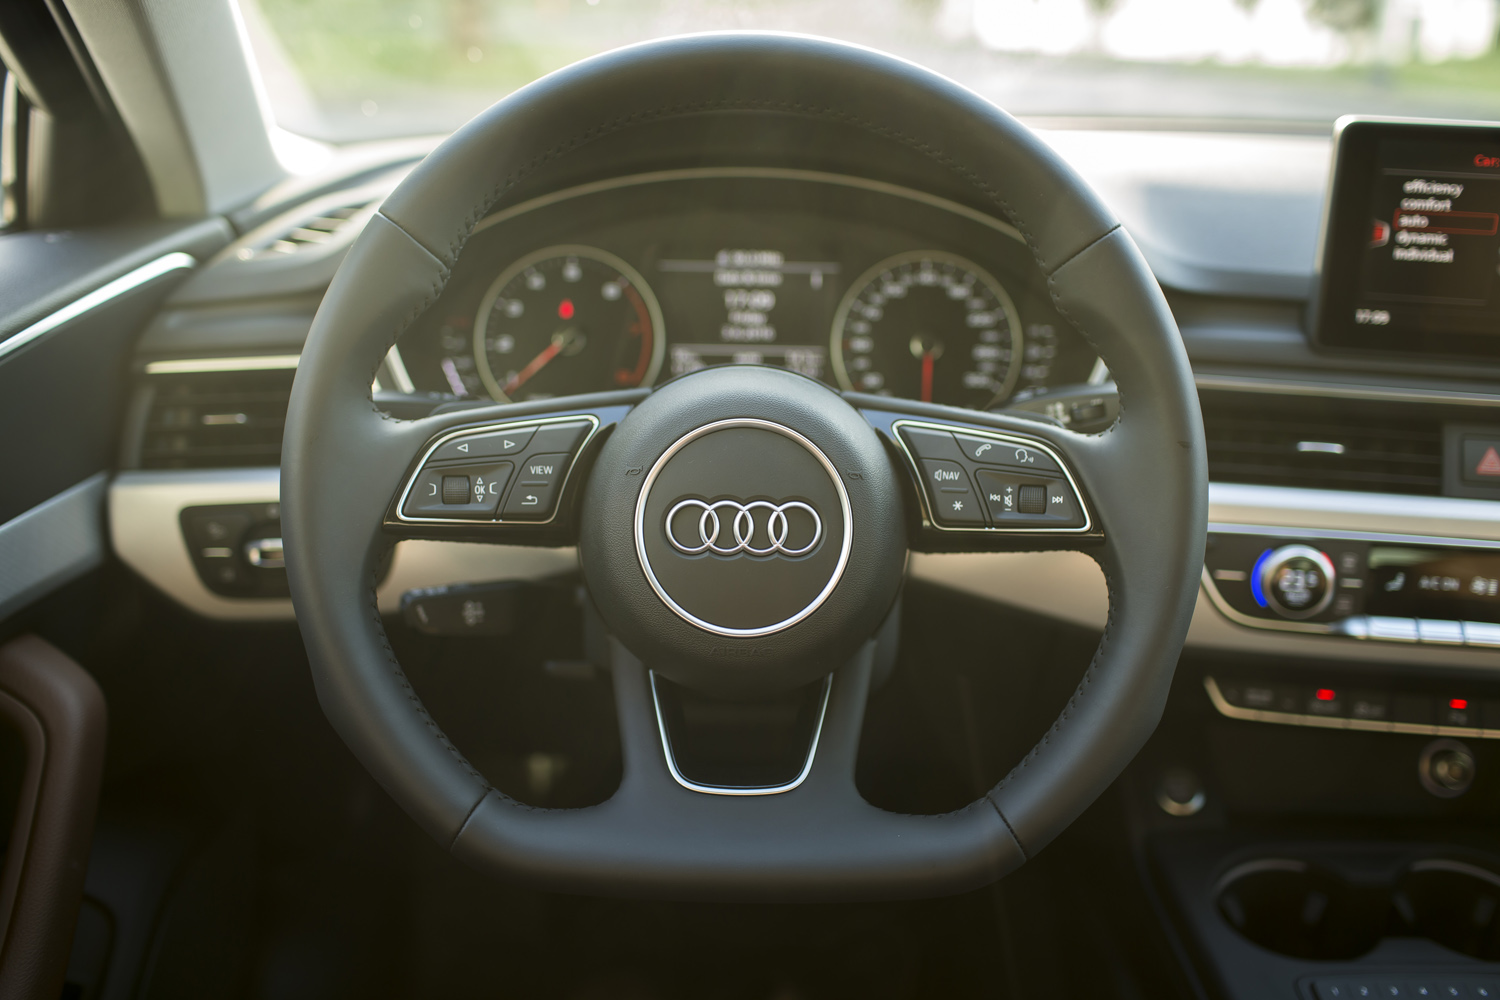 
Audi A4 thế hệ mới được trang bị vô-lăng 3 chấu thể thao với phần dưới được làm vát thẳng cùng gờ ở hai bên để tăng sự thuận tiện khi đánh lái.
